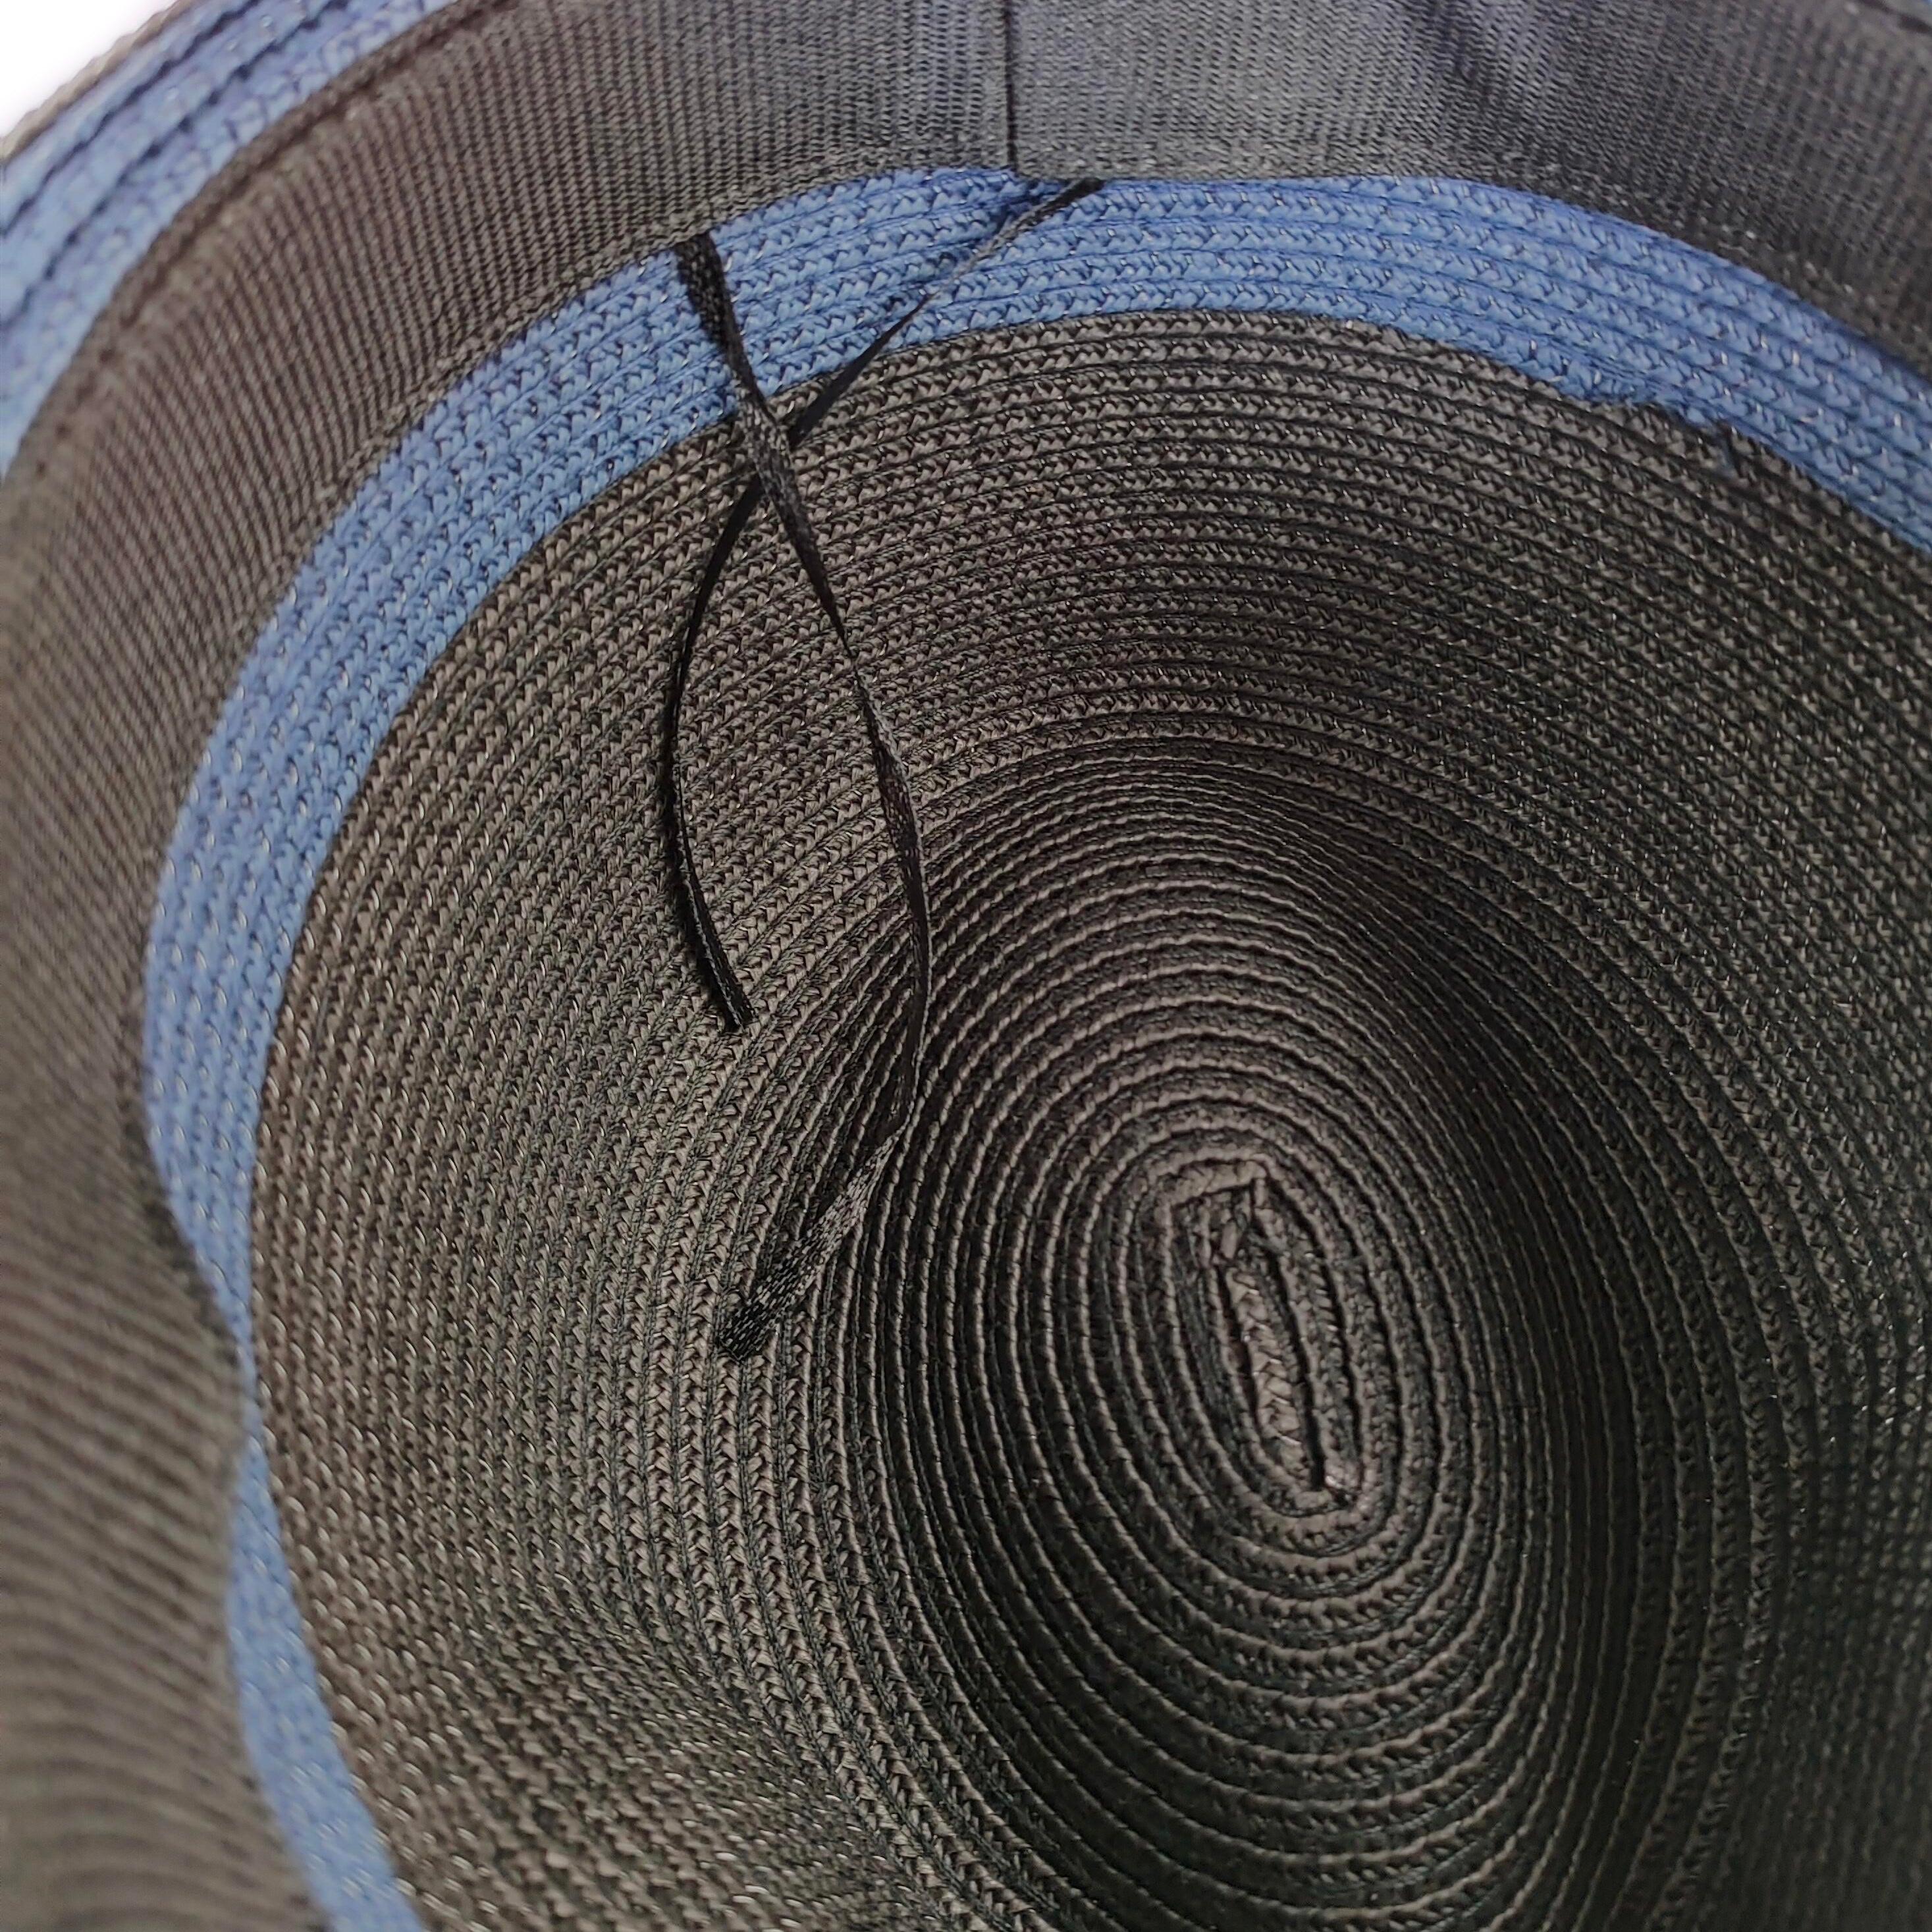 Chapeau Pliable Trilby avec Ruban - Bleu Foncé